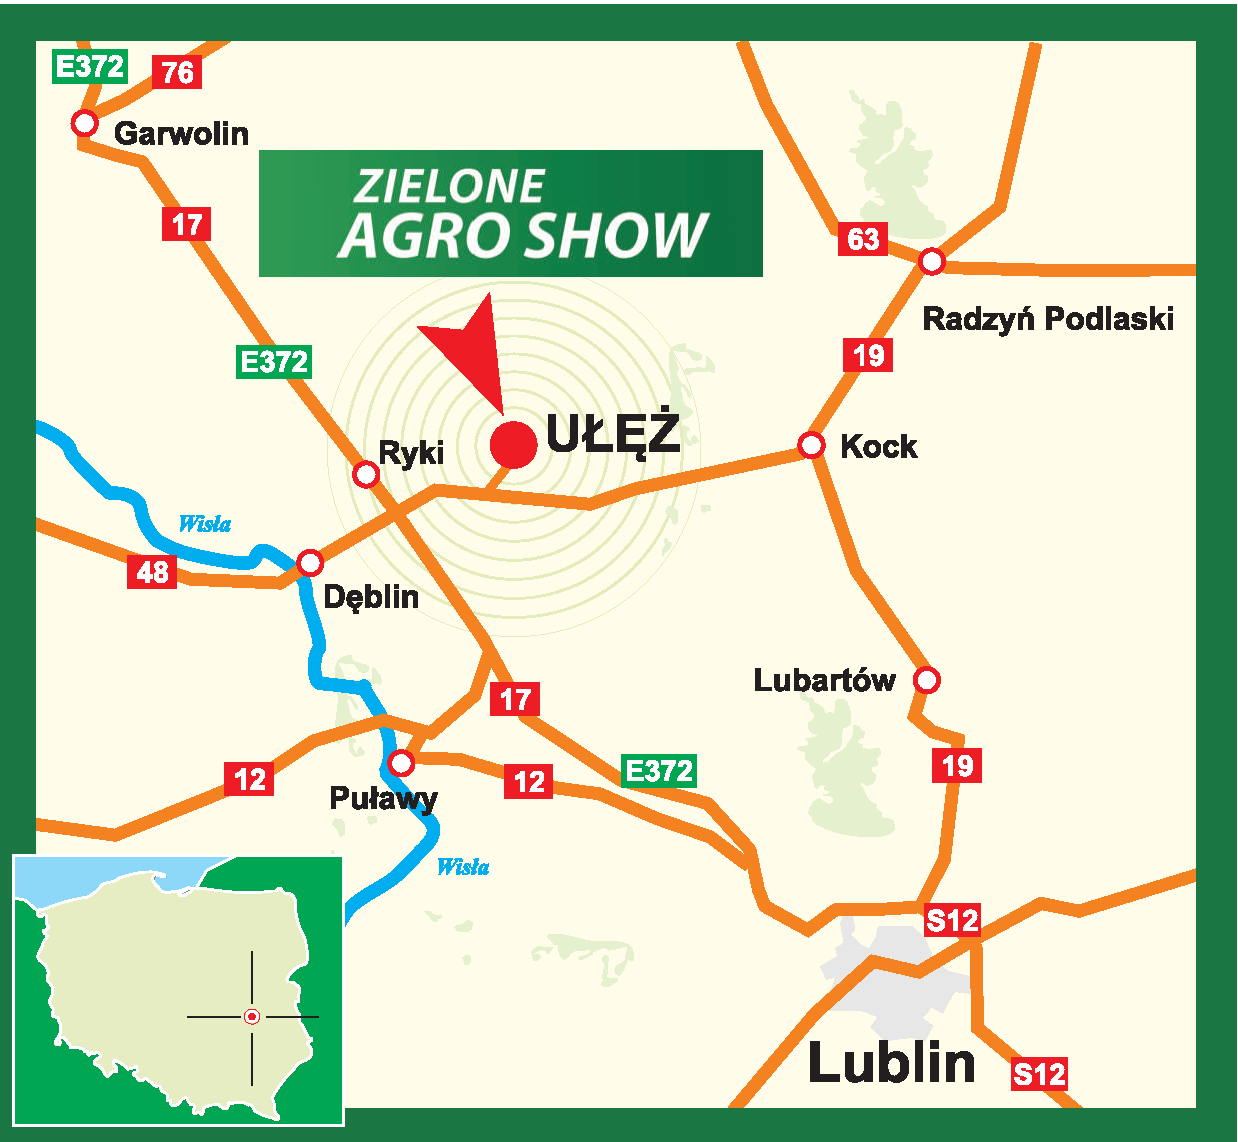 Teren Moto Parku w Ułężu w województwie lubelskim w dniach 4-5 czerwca gościł będzie wystawę Zielone Agro Show.